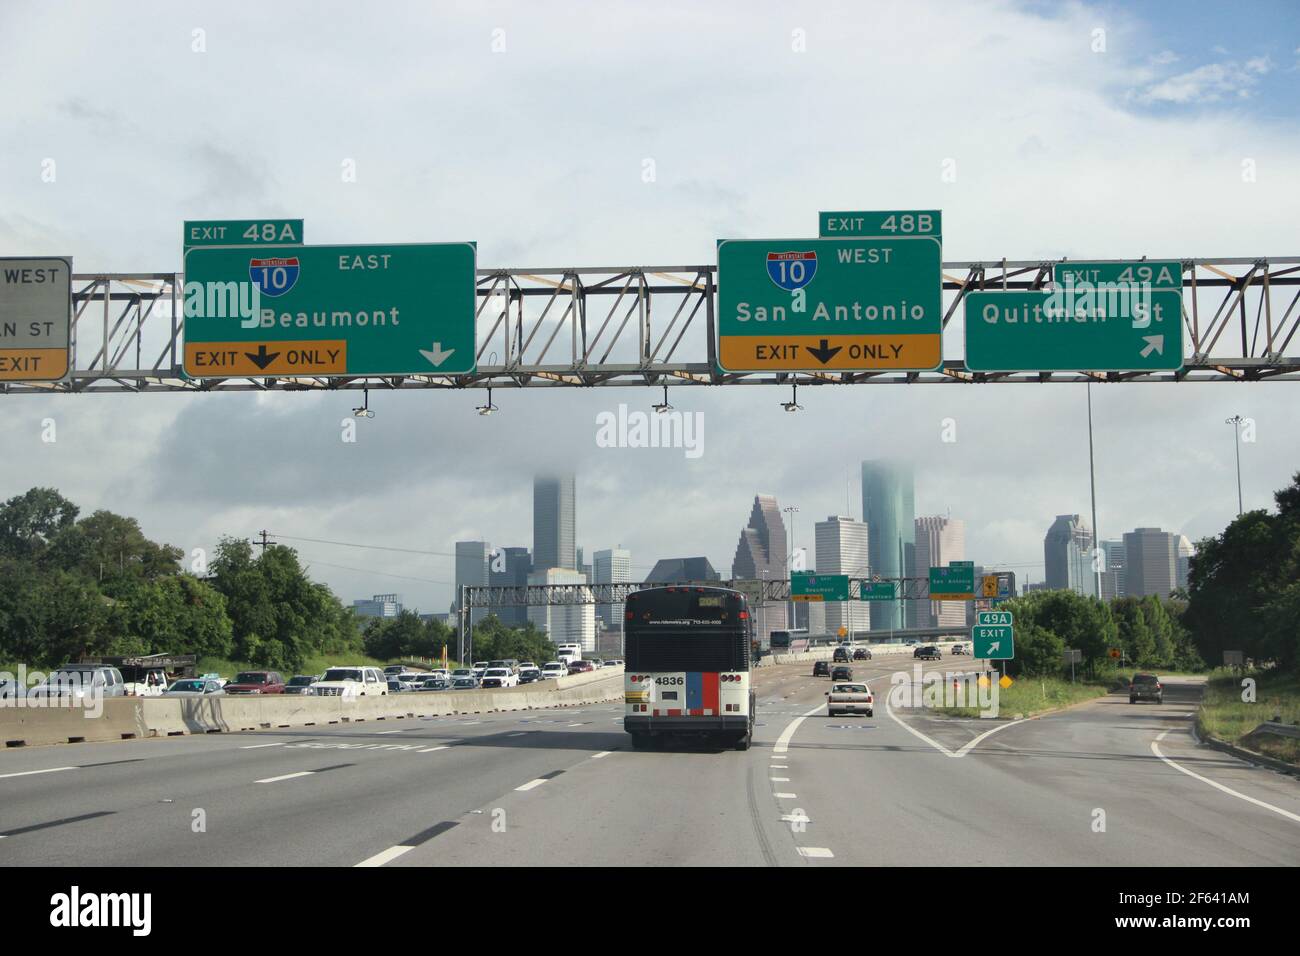 Houston Skyline von über der Autobahn in Richtung Downtown. Stockfoto